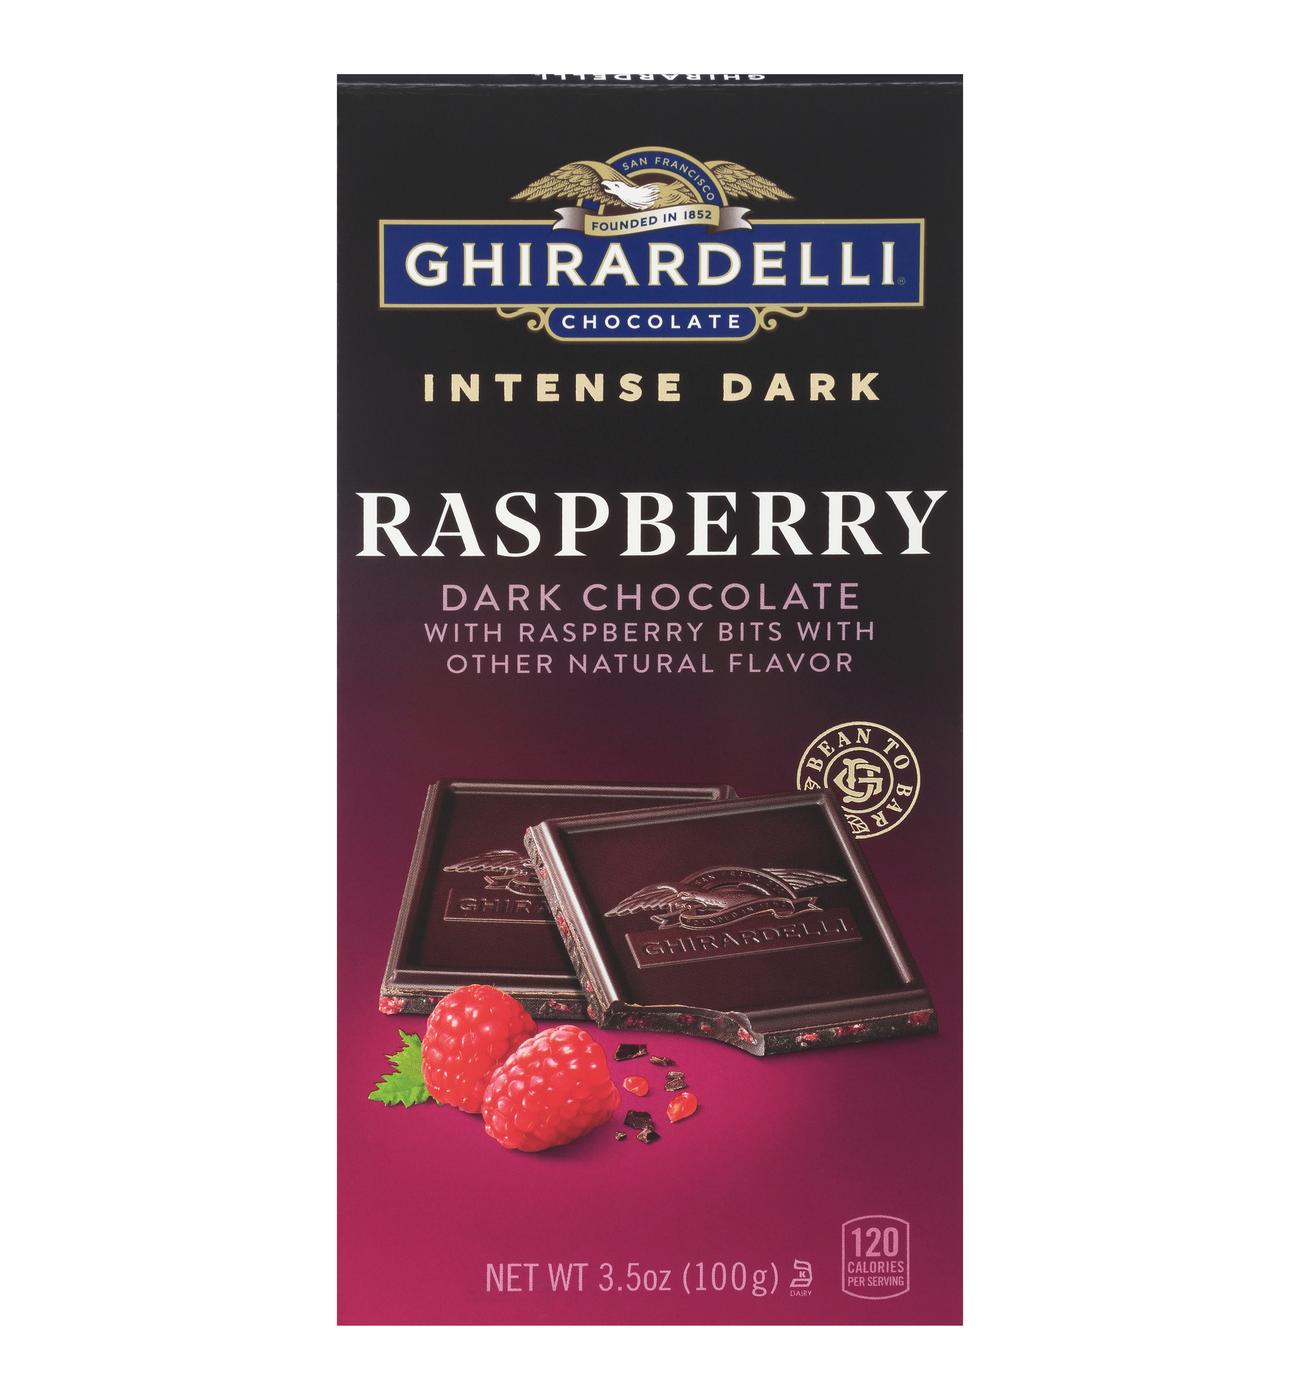 Ghirardelli Intense Dark Raspberry Chocolate Bar; image 1 of 2